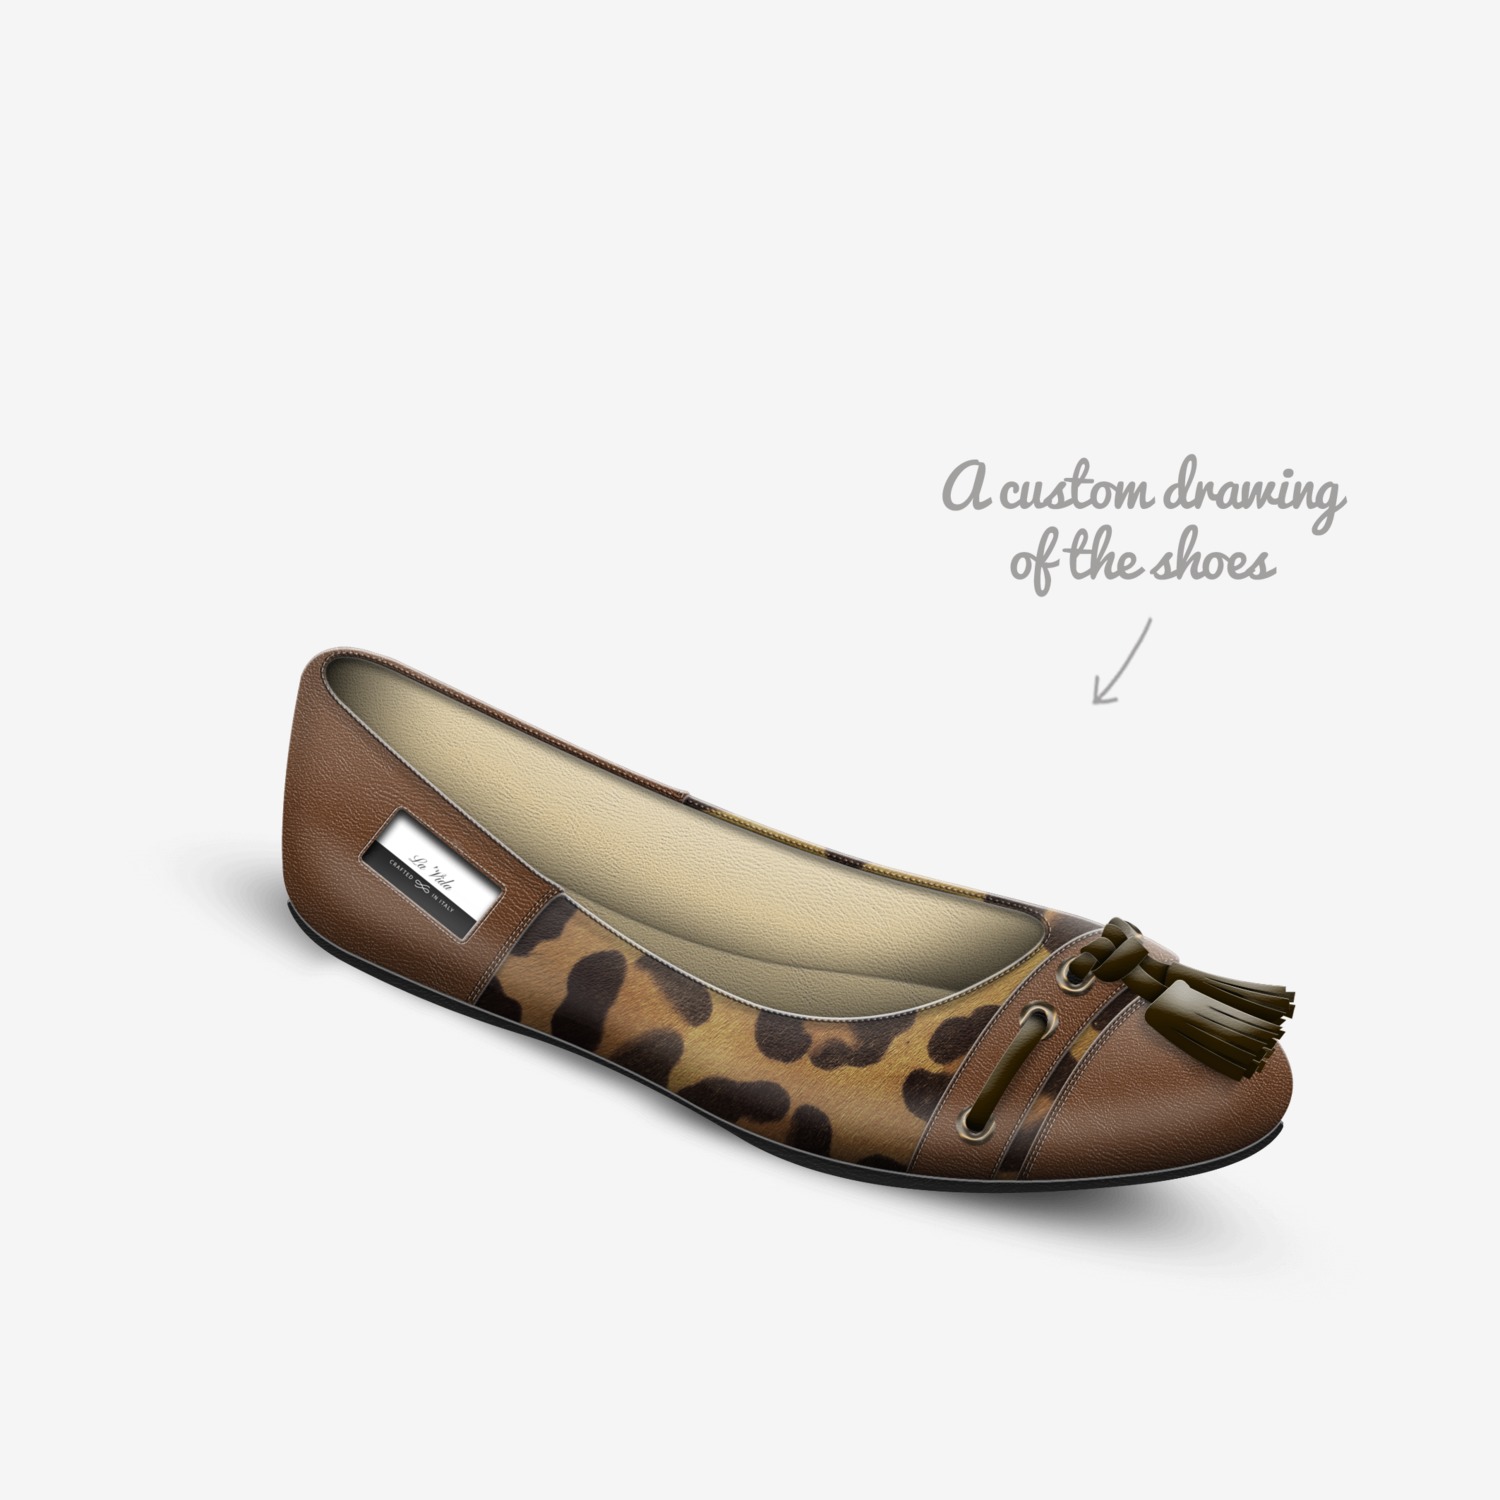 Produkt Forbavselse Misbruge La'Vida | A Custom Shoe concept by Desiree Florence Blake